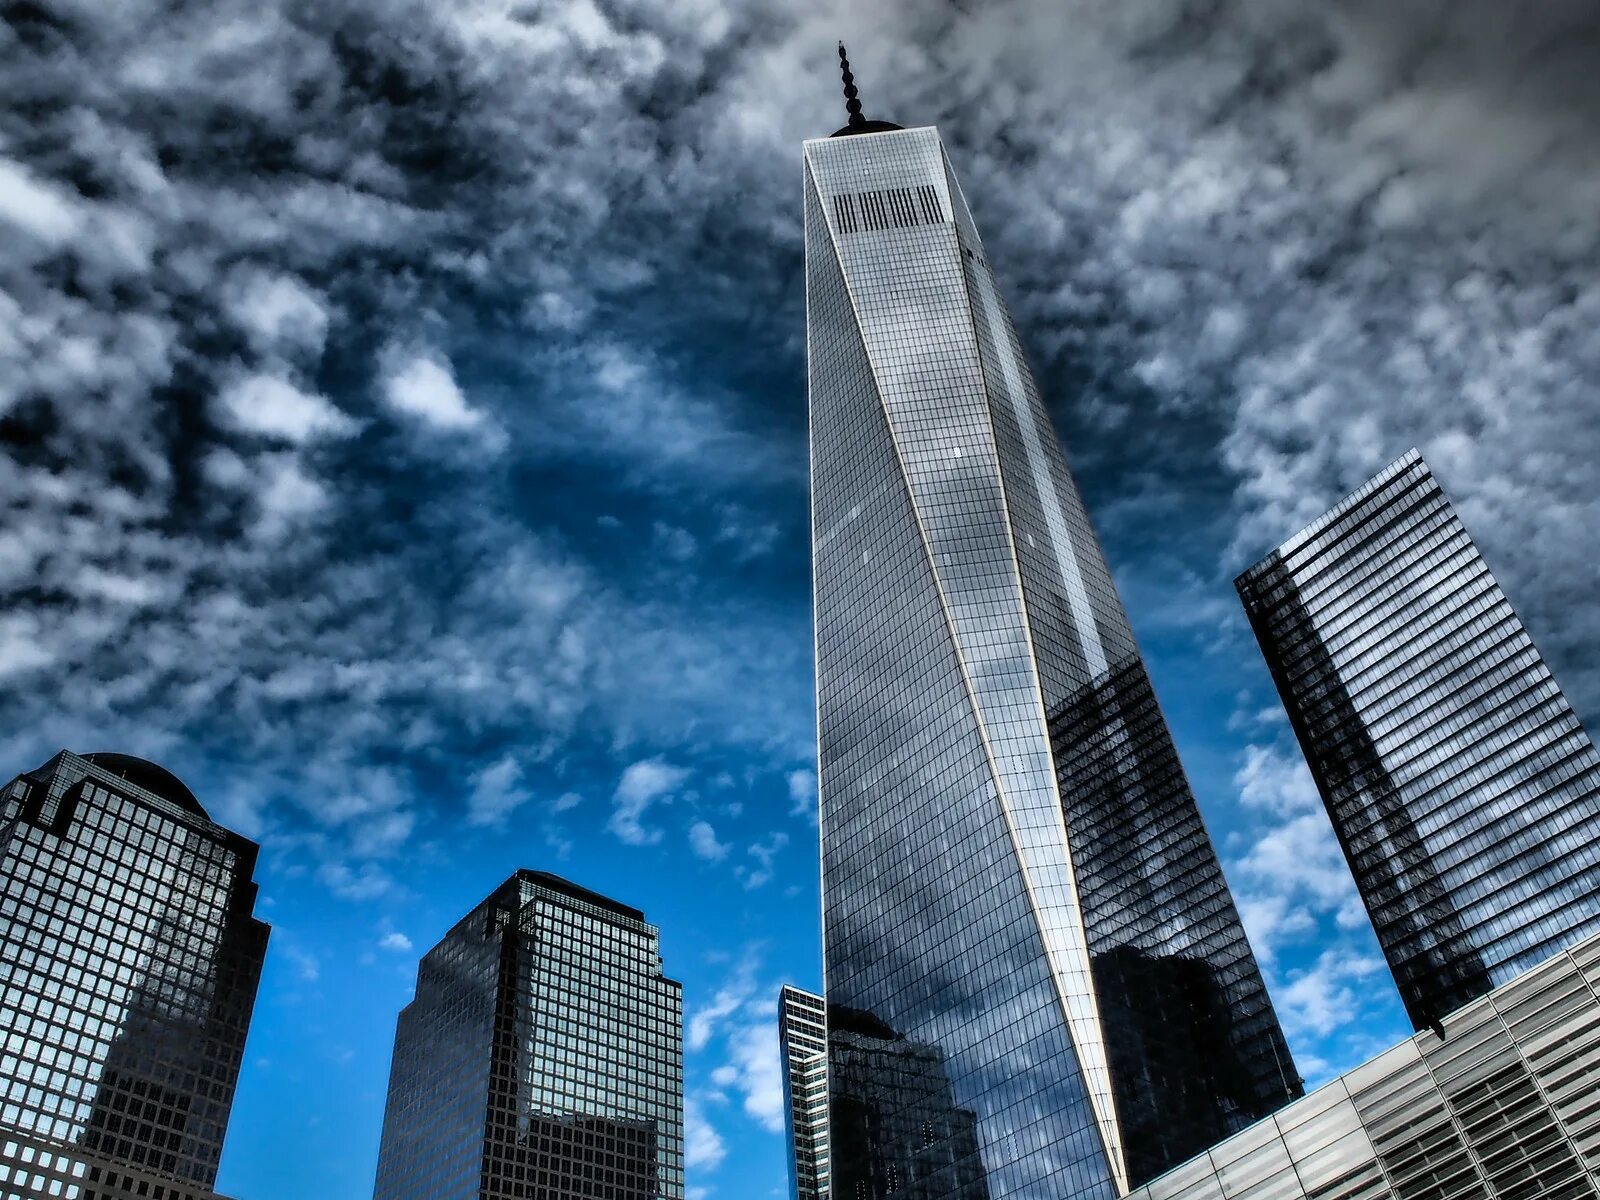 Building 1v1. ВТЦ 1 башня свободы. Всемирный торговый центр 1 Нью-Йорк. Всемирный торговый центр 1 (541 м). Нью-Йорк, США. Небоскреб ВТЦ В Нью Йорке.